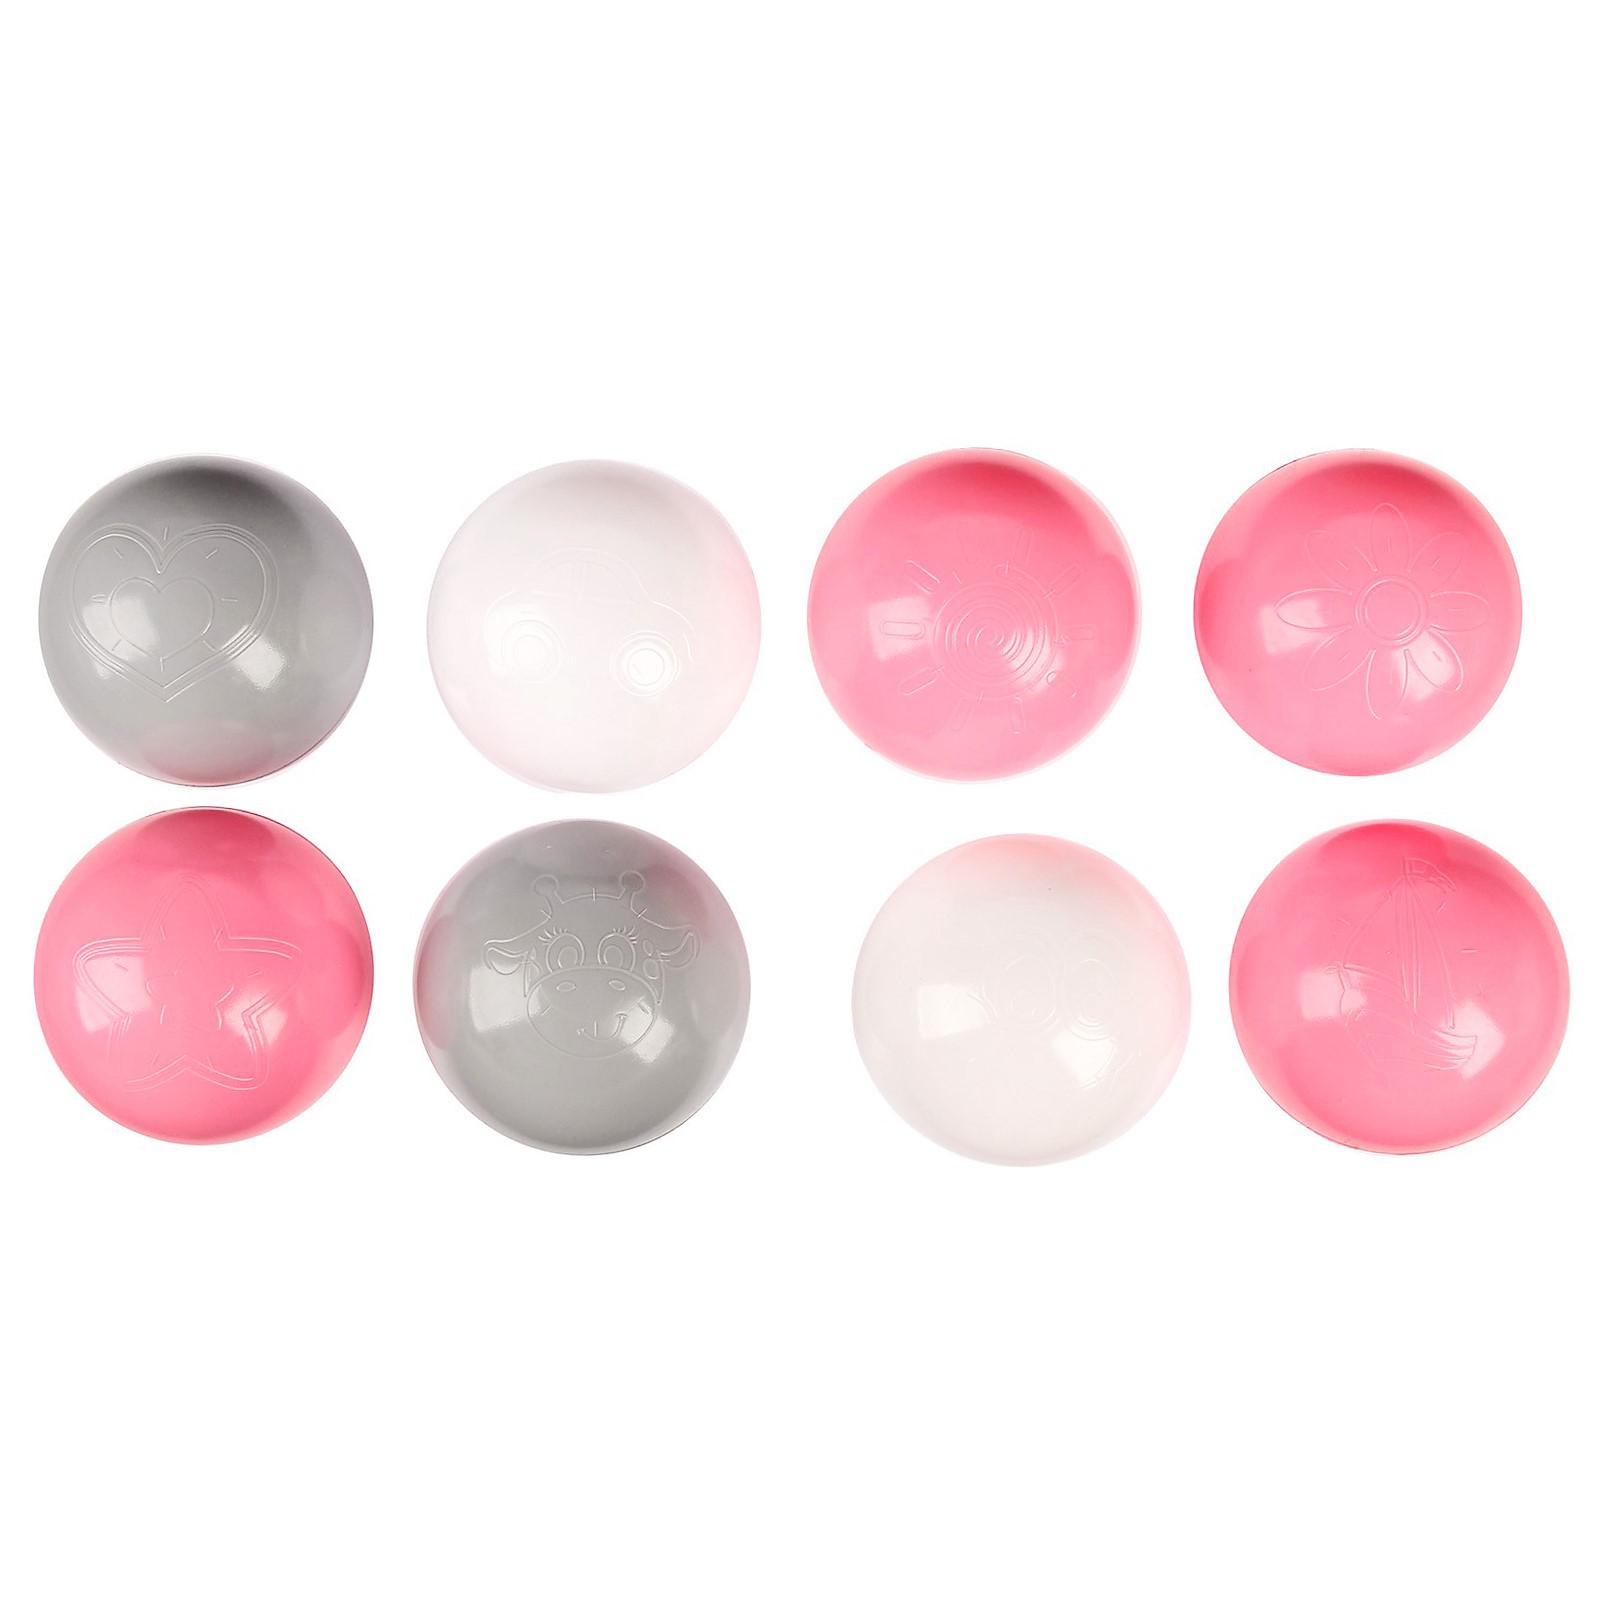 Шарики Соломон для сухого бассейна с рисунком диаметр шара 7.5 см набор 150 штук цвет розовый белый серый - фото 4